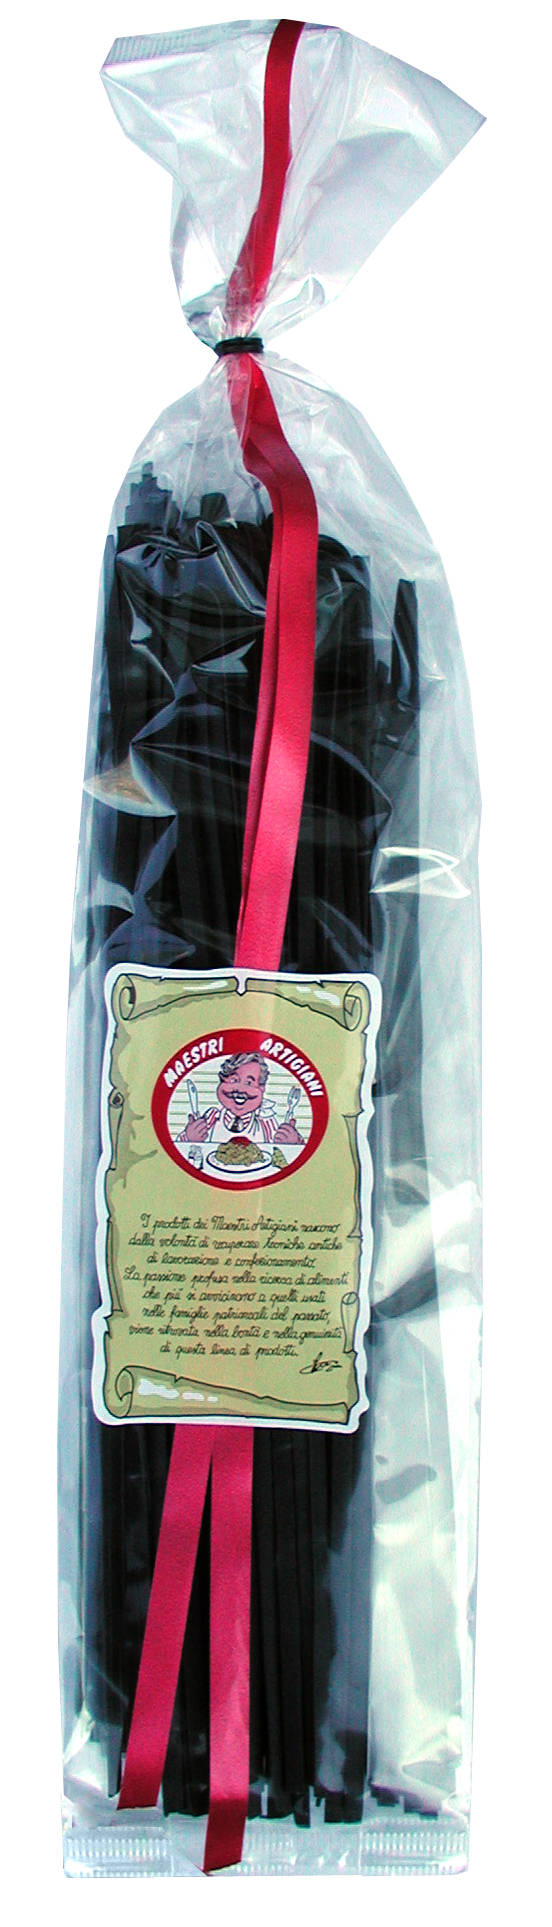 Tagliatelle al Nero Sepia, Bandnudeln schwarz gefärbt, 250 g